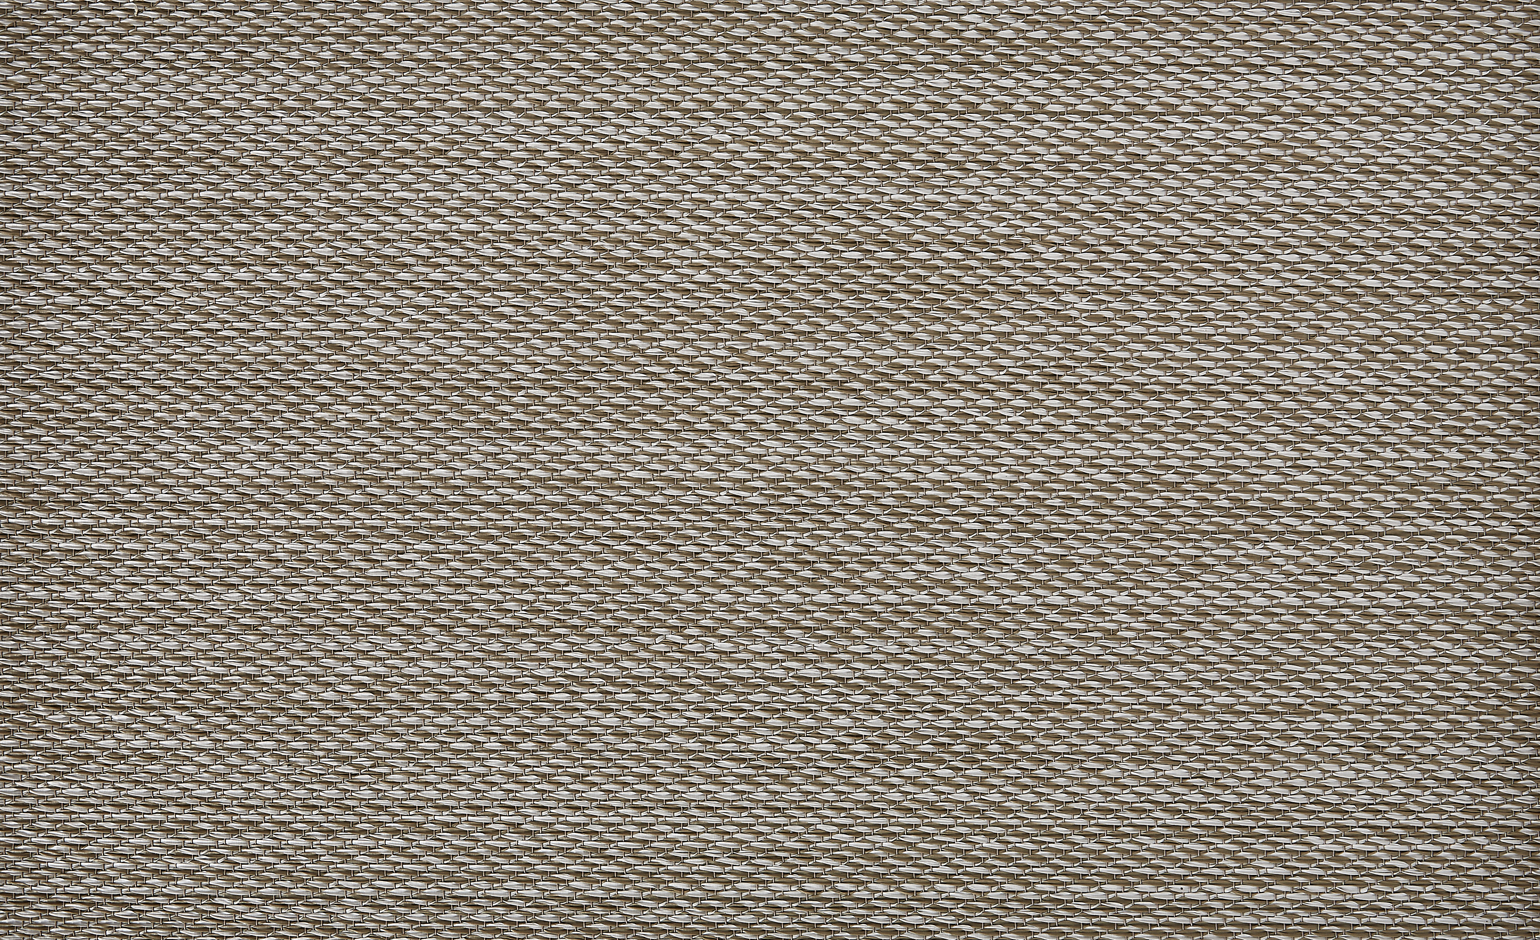 Sol vinyle rouleau NATURELOOK ARGENT, Textile fibre tissée, argent, rouleau 2.00 m